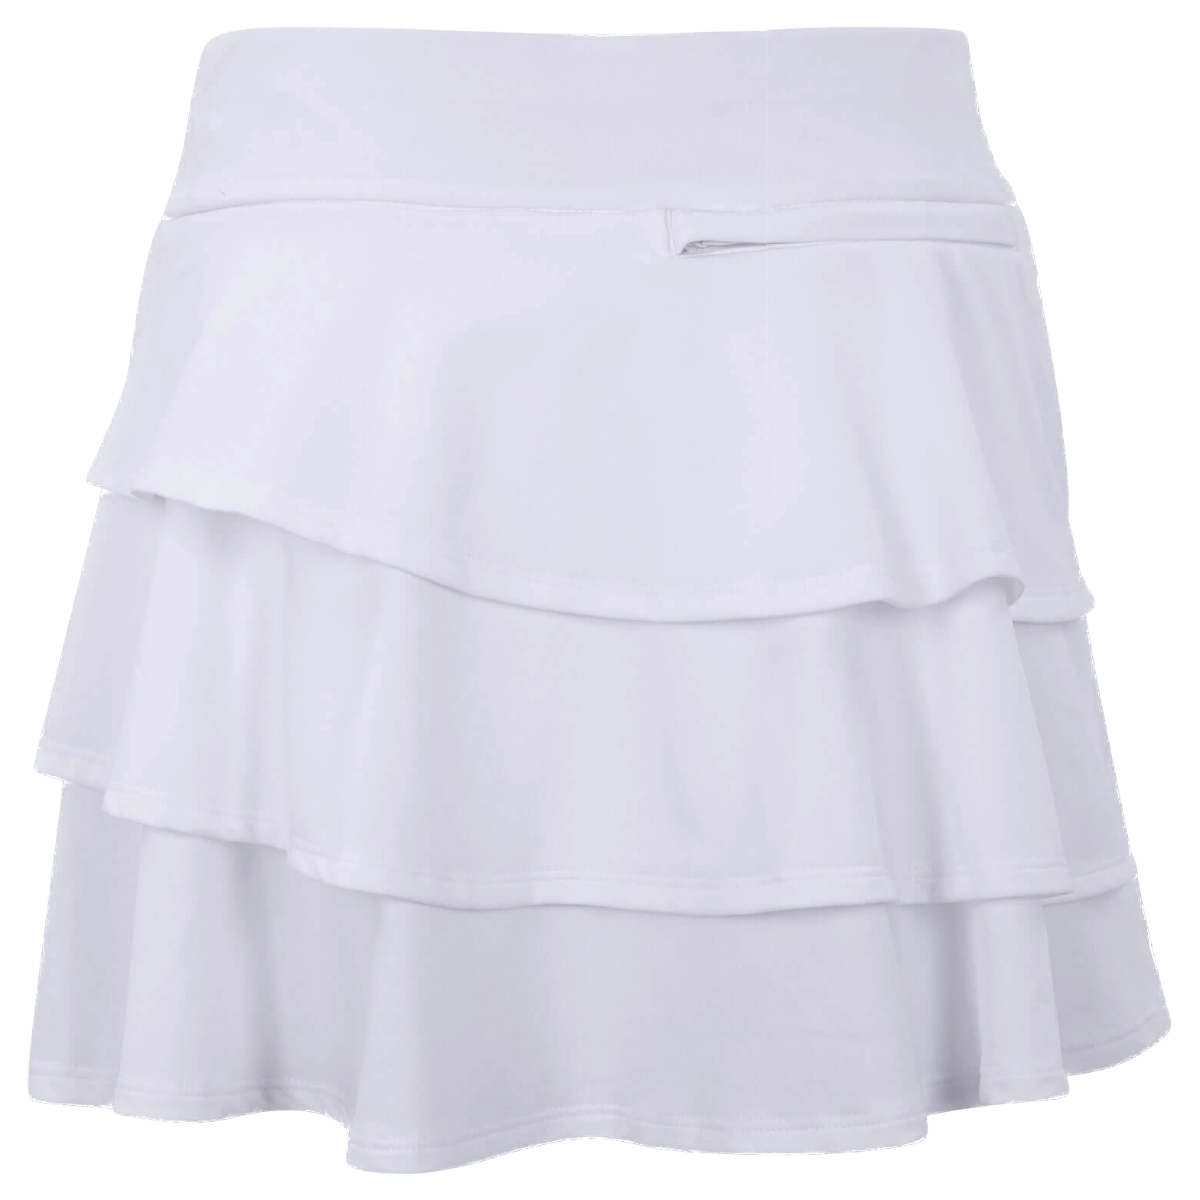 Adidas Girls Ruffled Skirt White